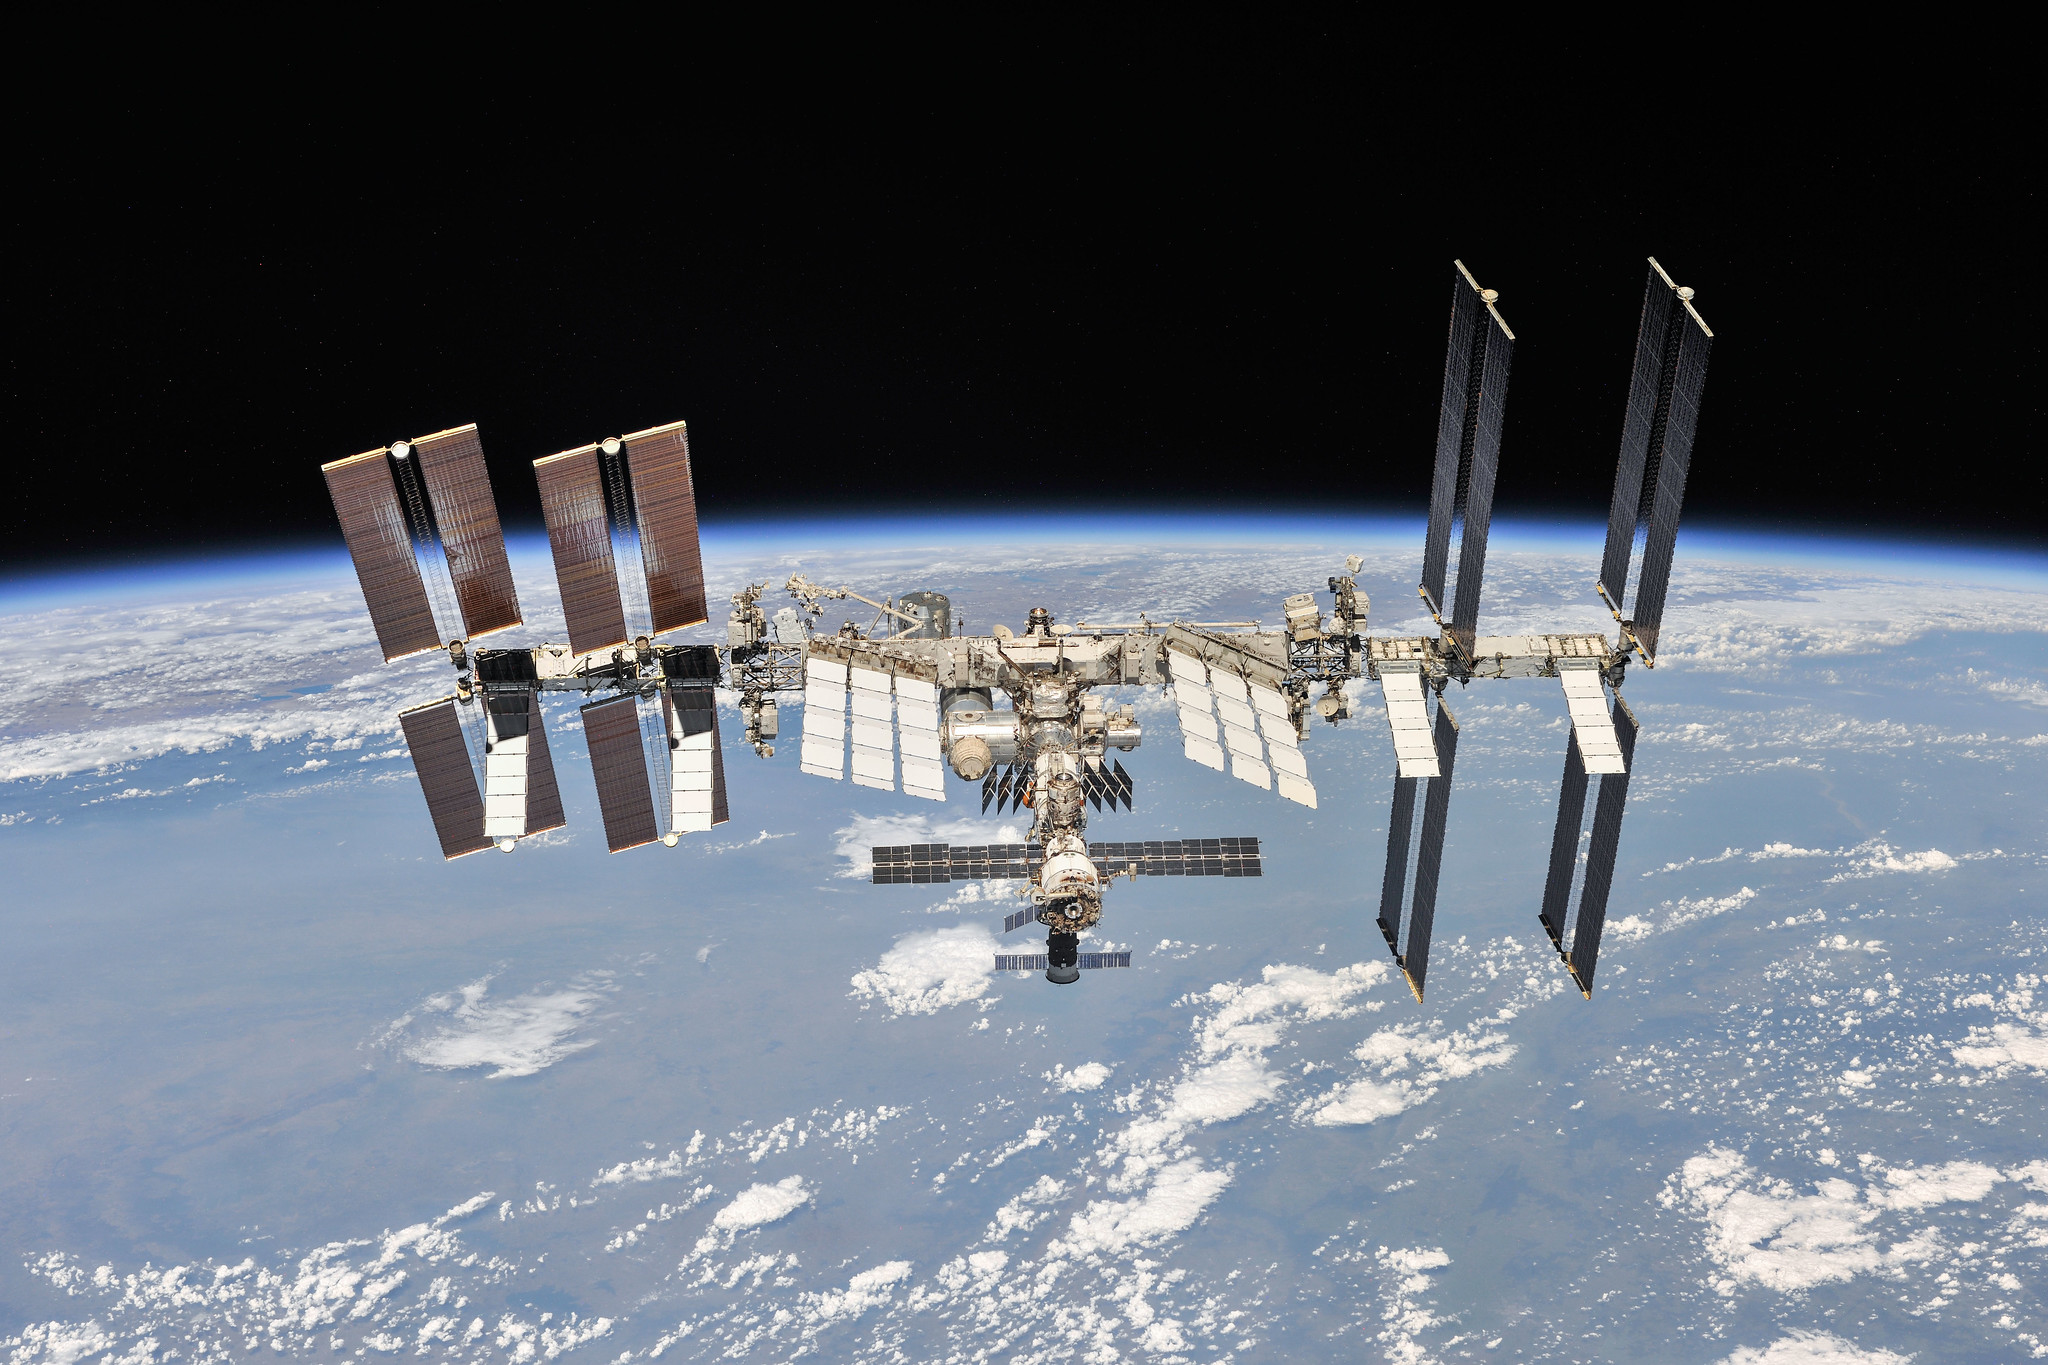 NASA, ESA, Japan und Kanada werden die ISS bis 2030 nutzen und die Station dann im Meer versenken